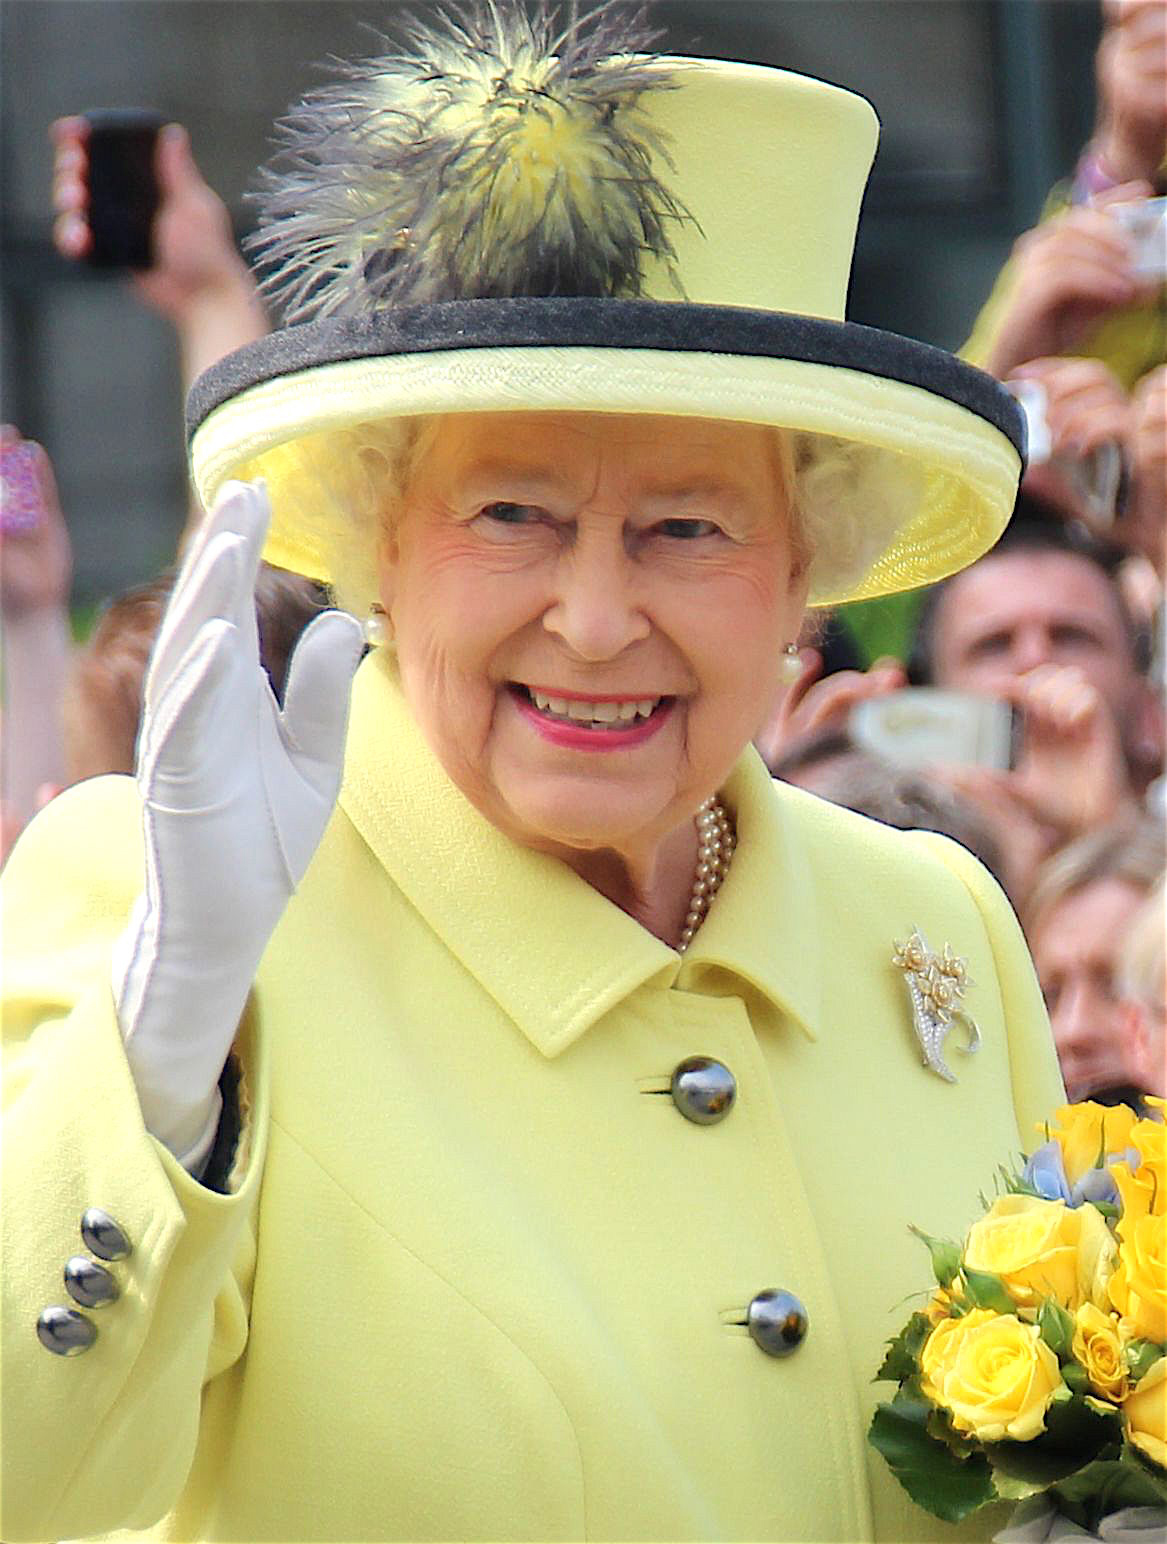 كأس أوروبا: الملكة إليزابيث تتمنى حظا سعيدا لإنكلترا في المباراة النهائية